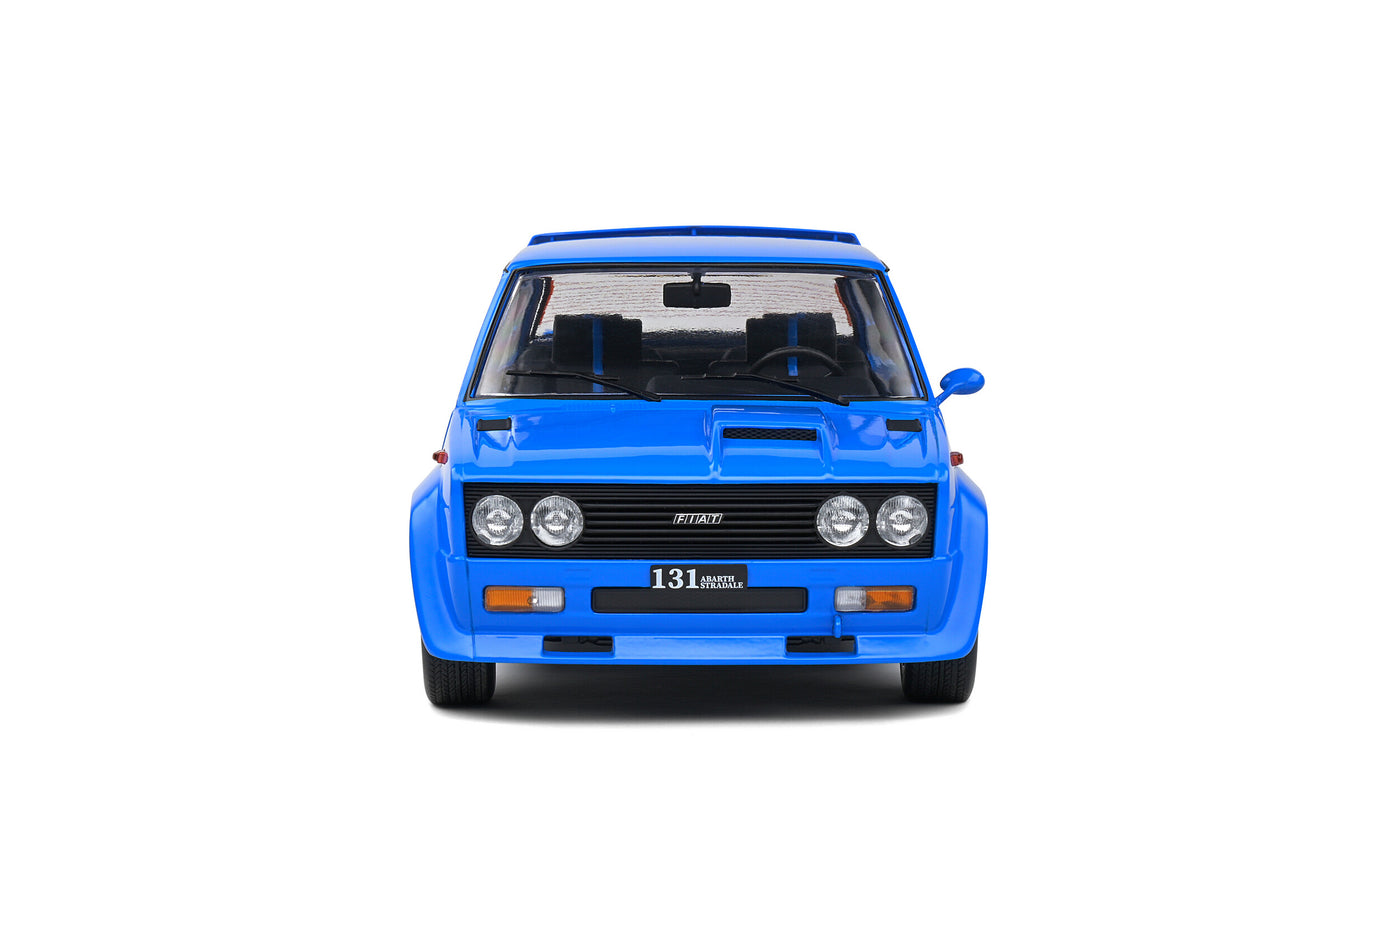 Solido 1980 Fiat 131 Abarth Blue 1:18